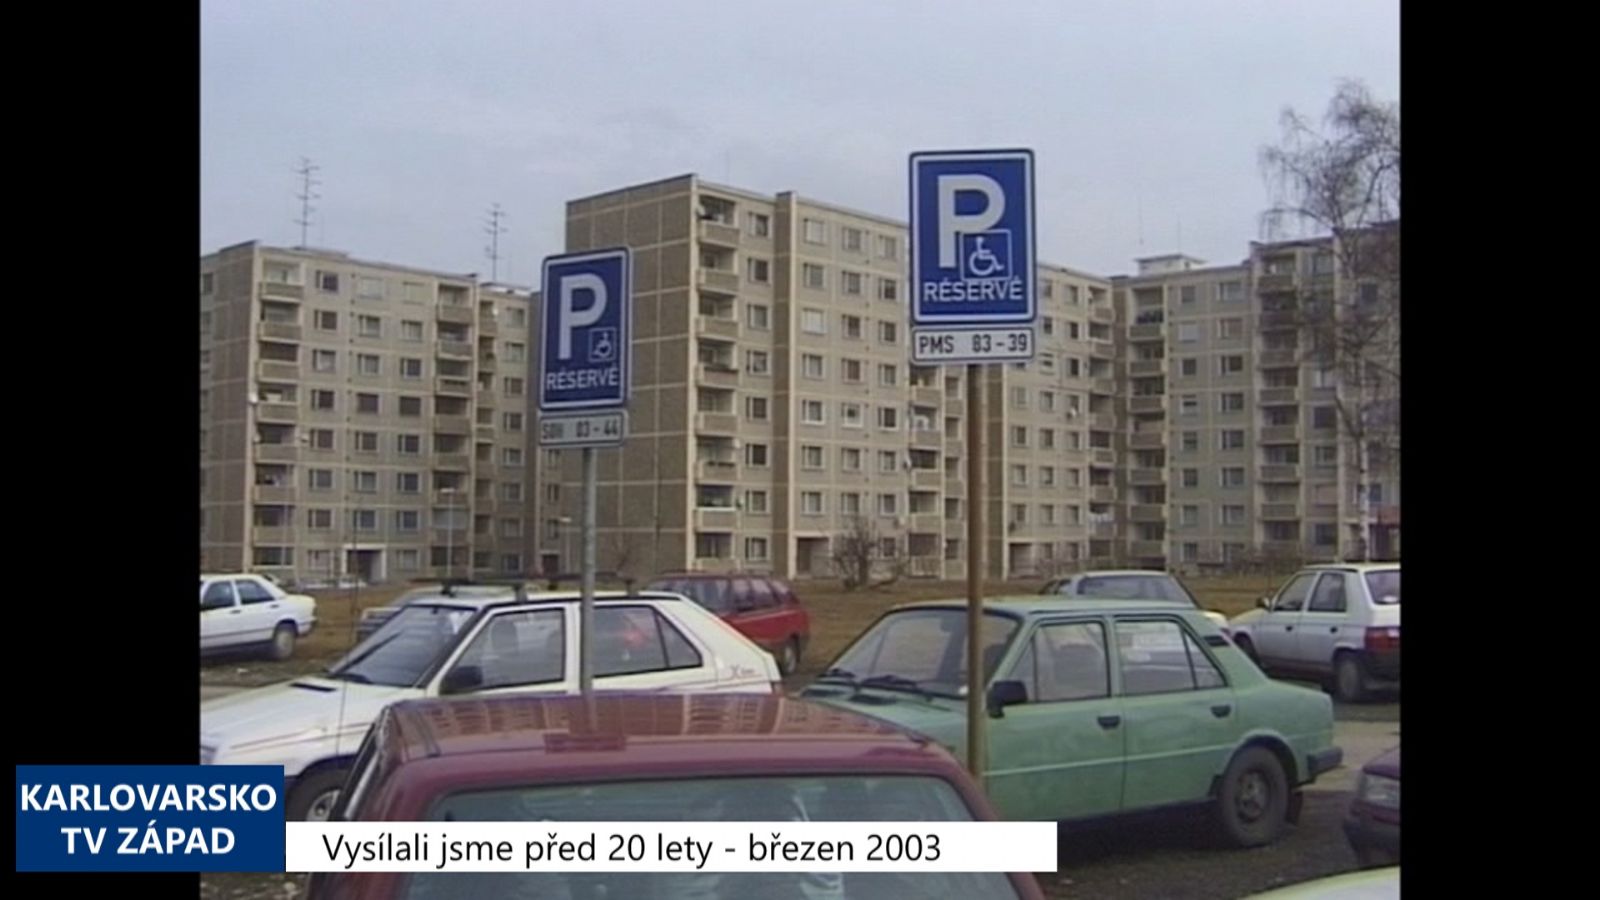 2003 – Sokolov: Přidělování vyhrazených parkování se zpřísní (TV Západ)